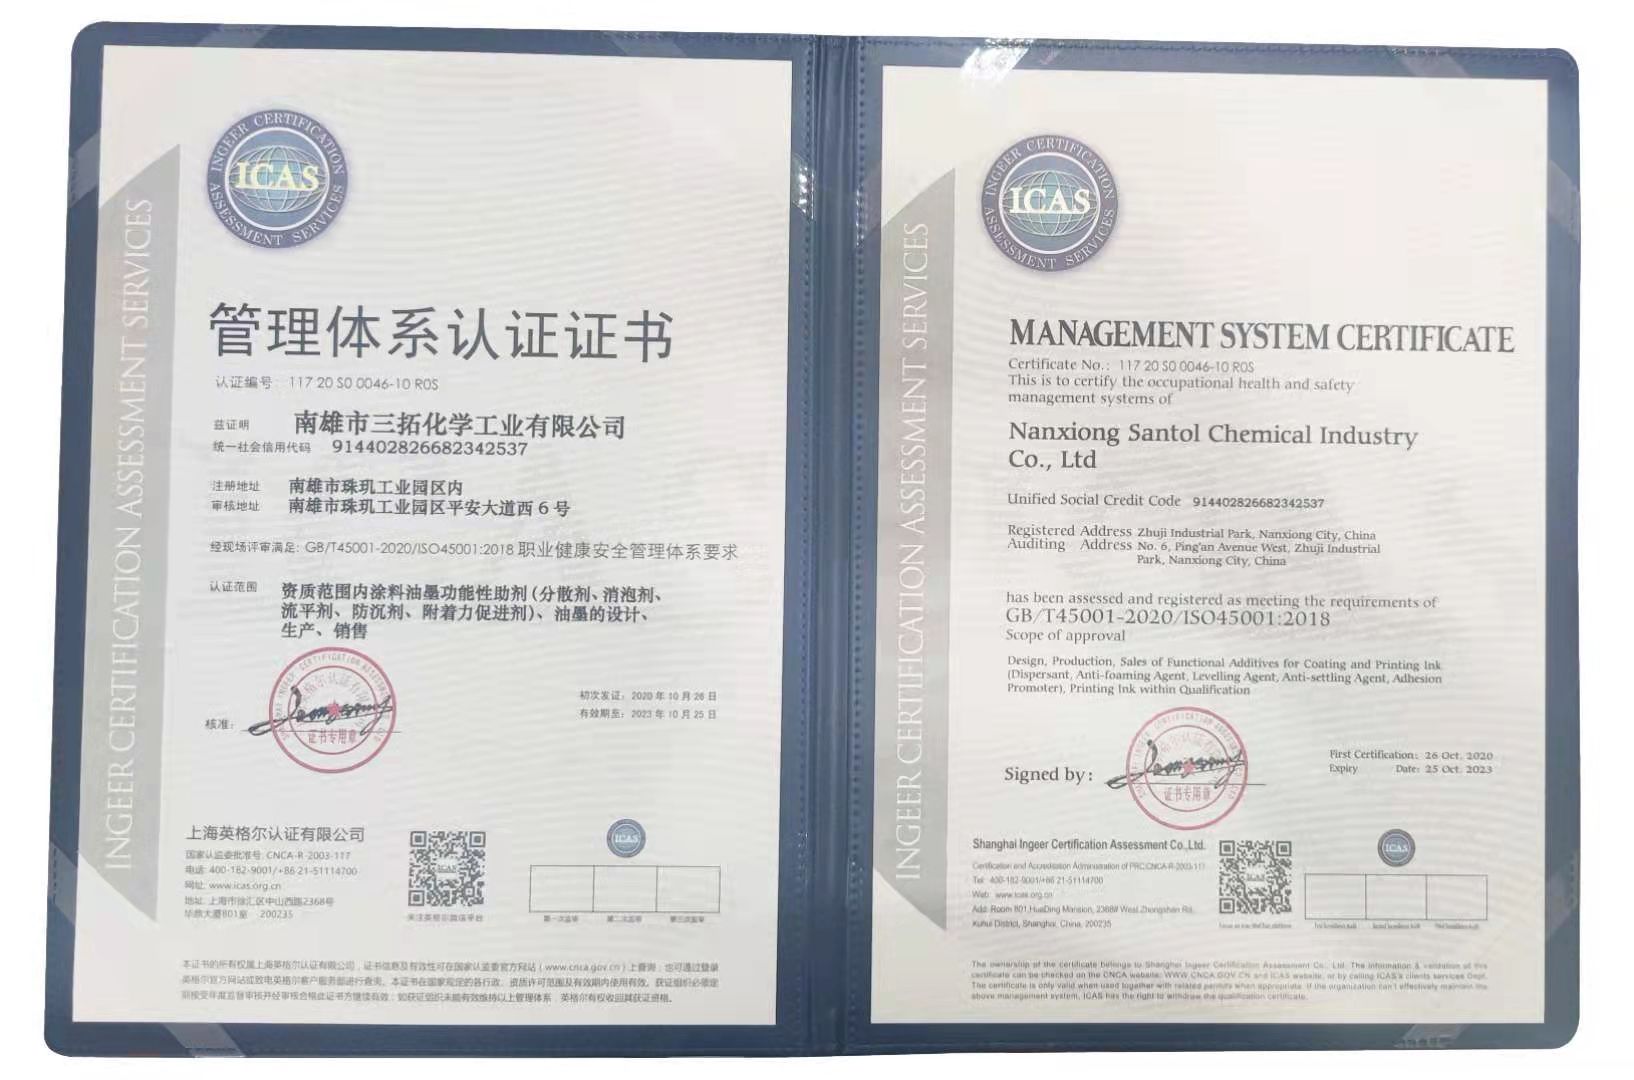 三拓化学已全面通过ISO45001管理体系认证